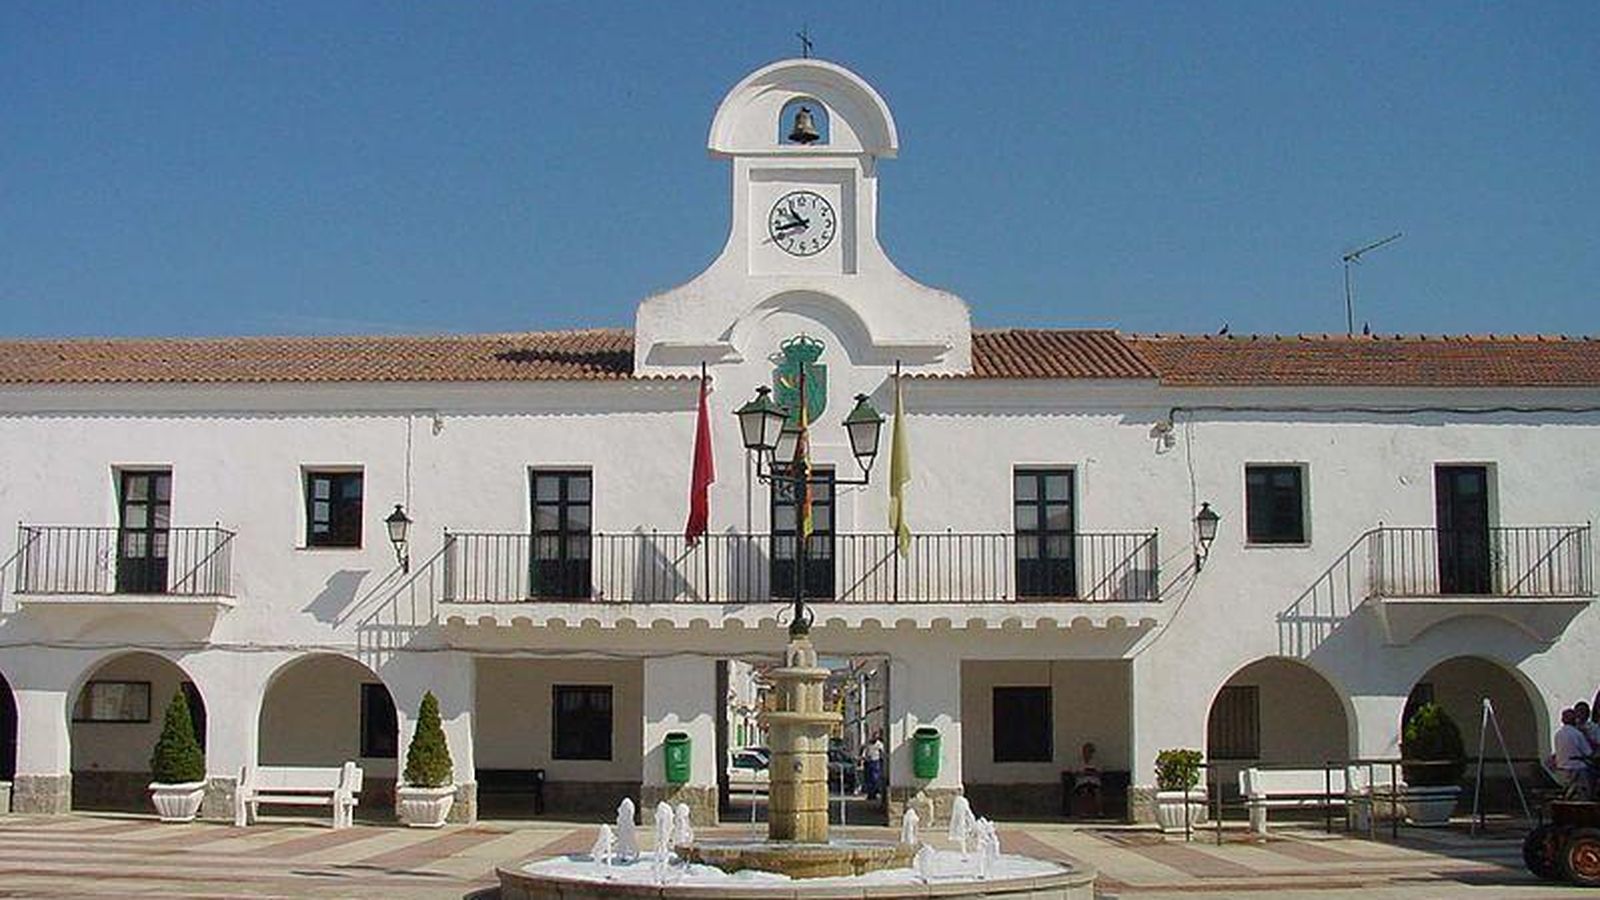 Foto: Vista de la fachada principal del Ayuntamiento de Villanueva de Pardillo (Madrid). (Wikimedia Commons)